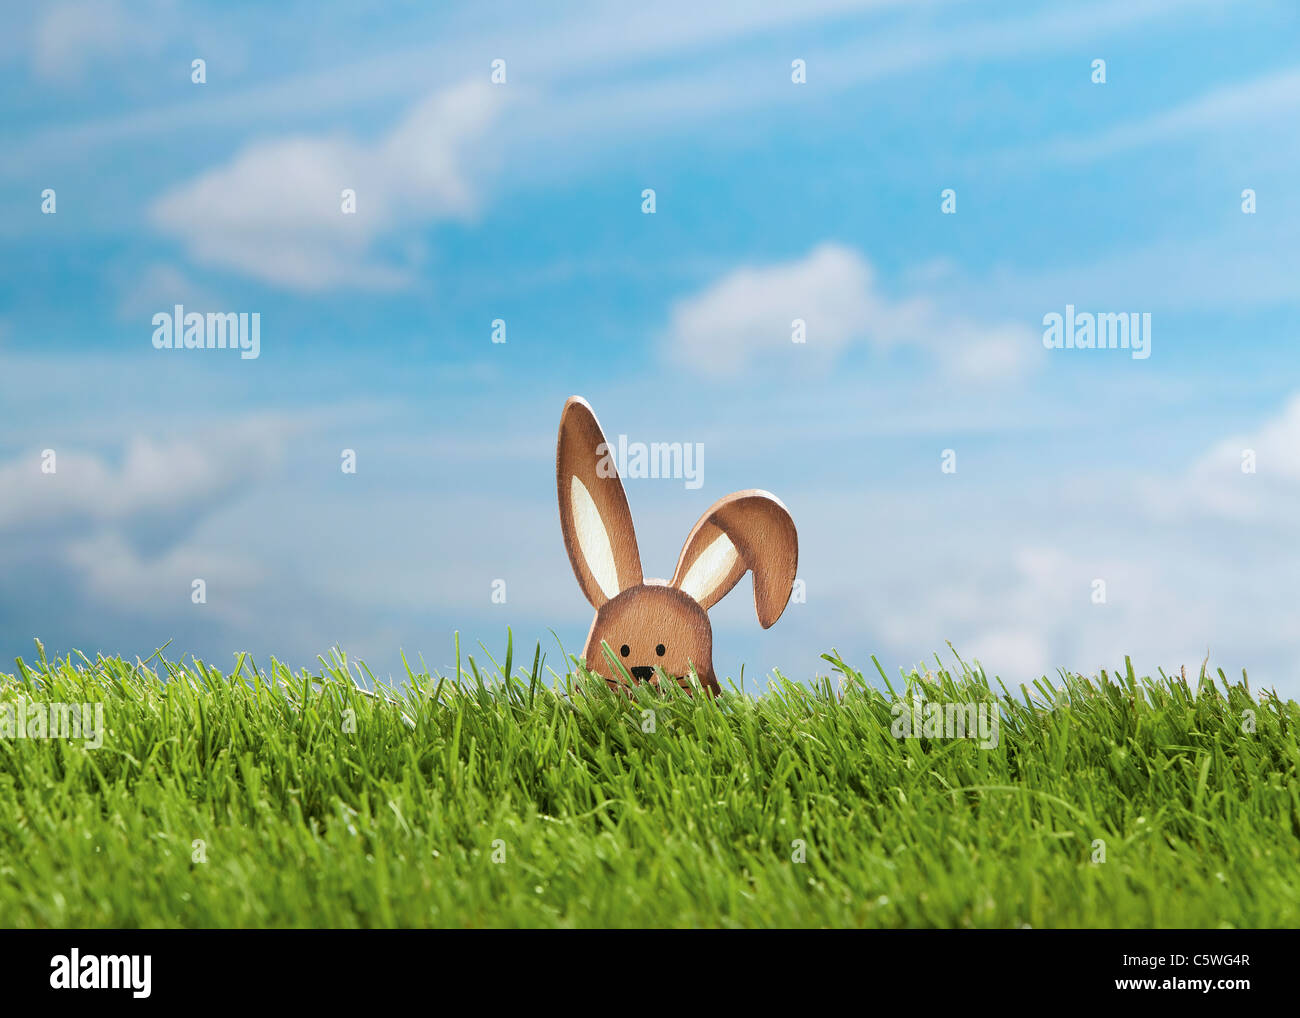 Alemania, Easter Bunny figura en pradera Foto de stock